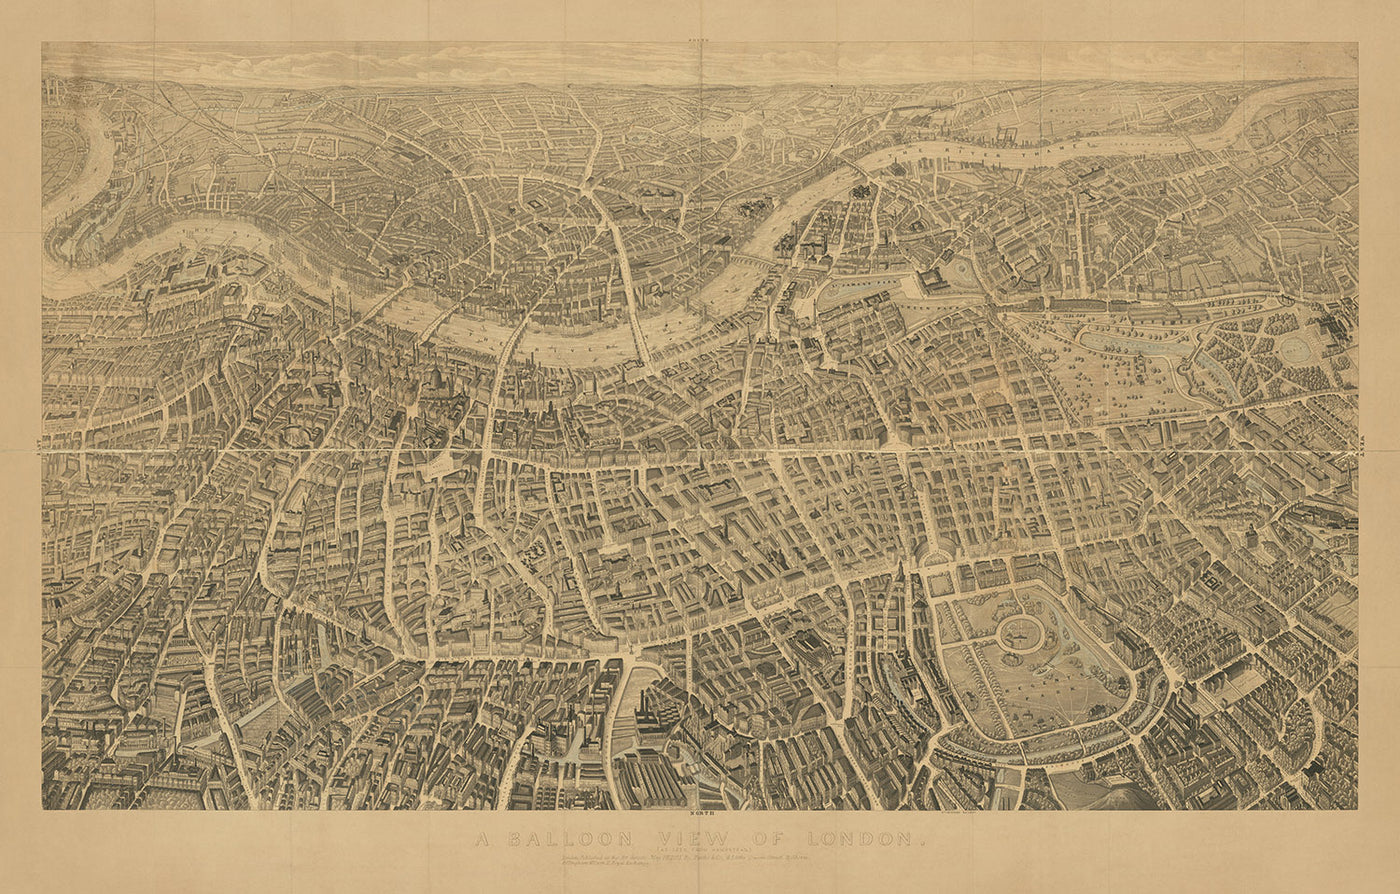 Bildkarte von London von Banks, 1851: Buckingham Palace, St. Paul's, Parlament, Hyde Park, Lambeth Palace